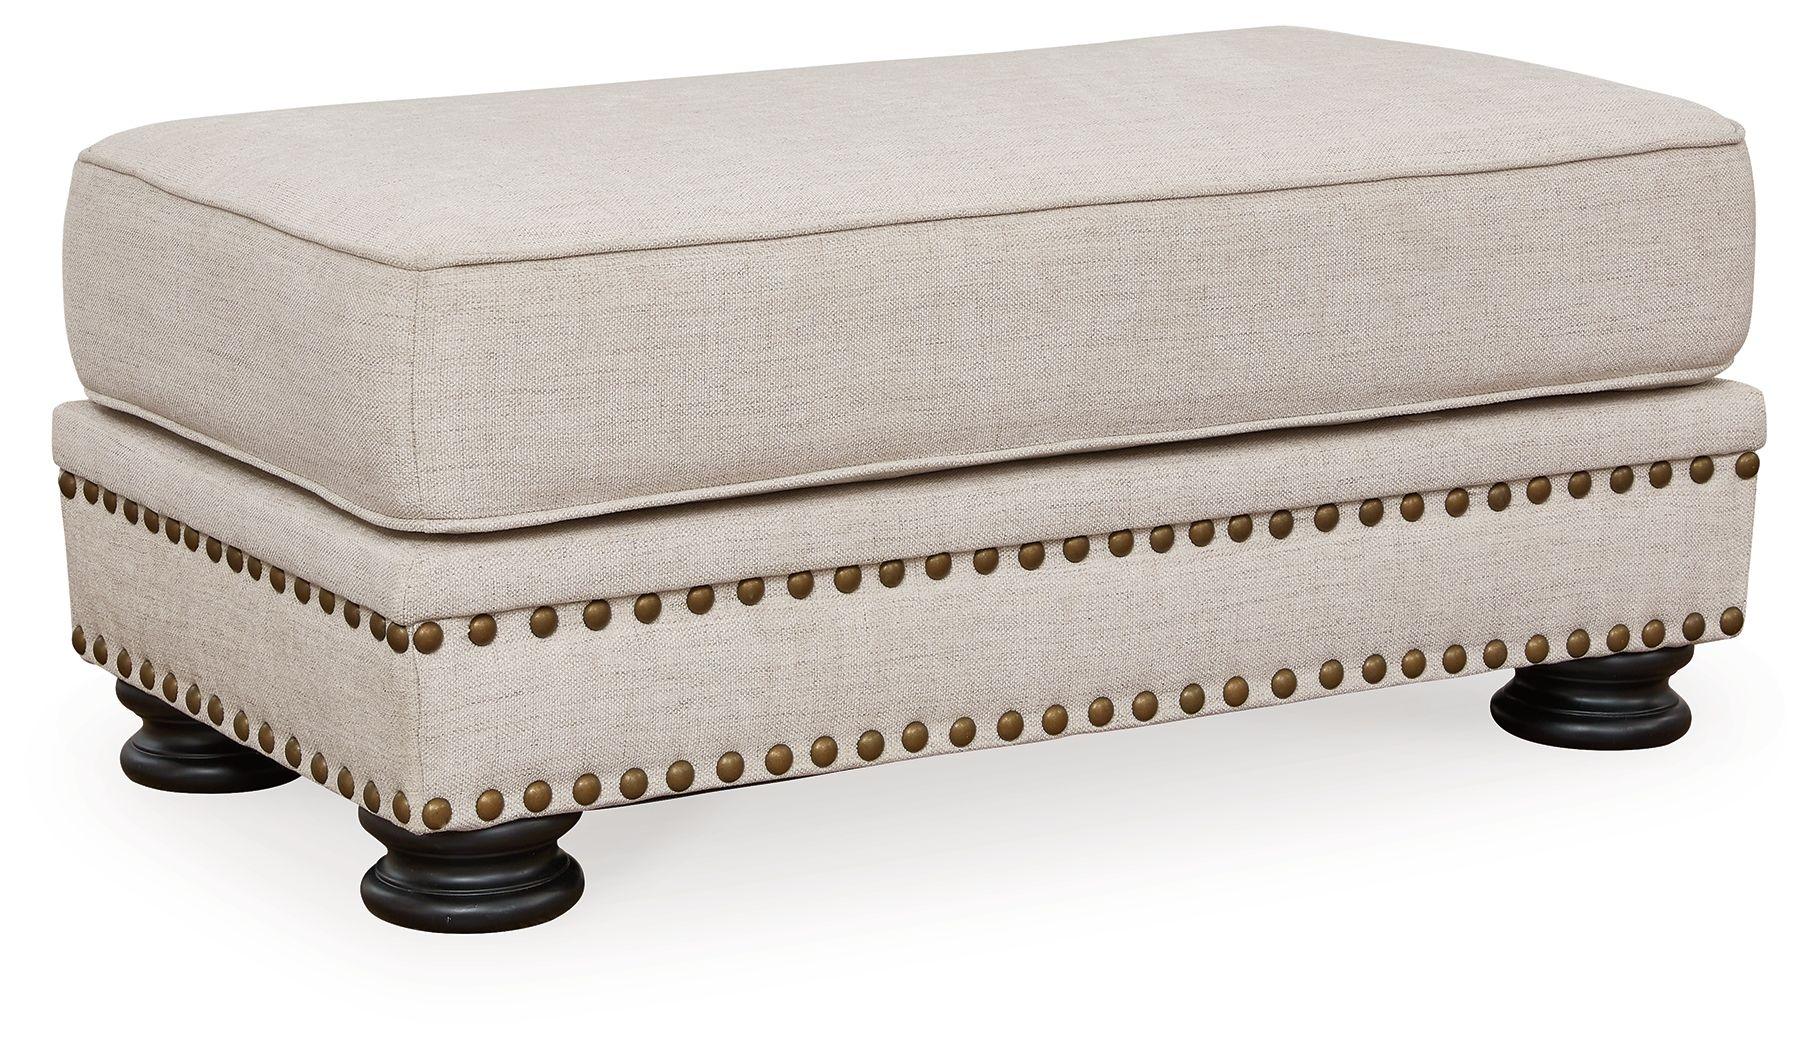 Benchcraft® - Merrimore - Linen - Ottoman - 5th Avenue Furniture